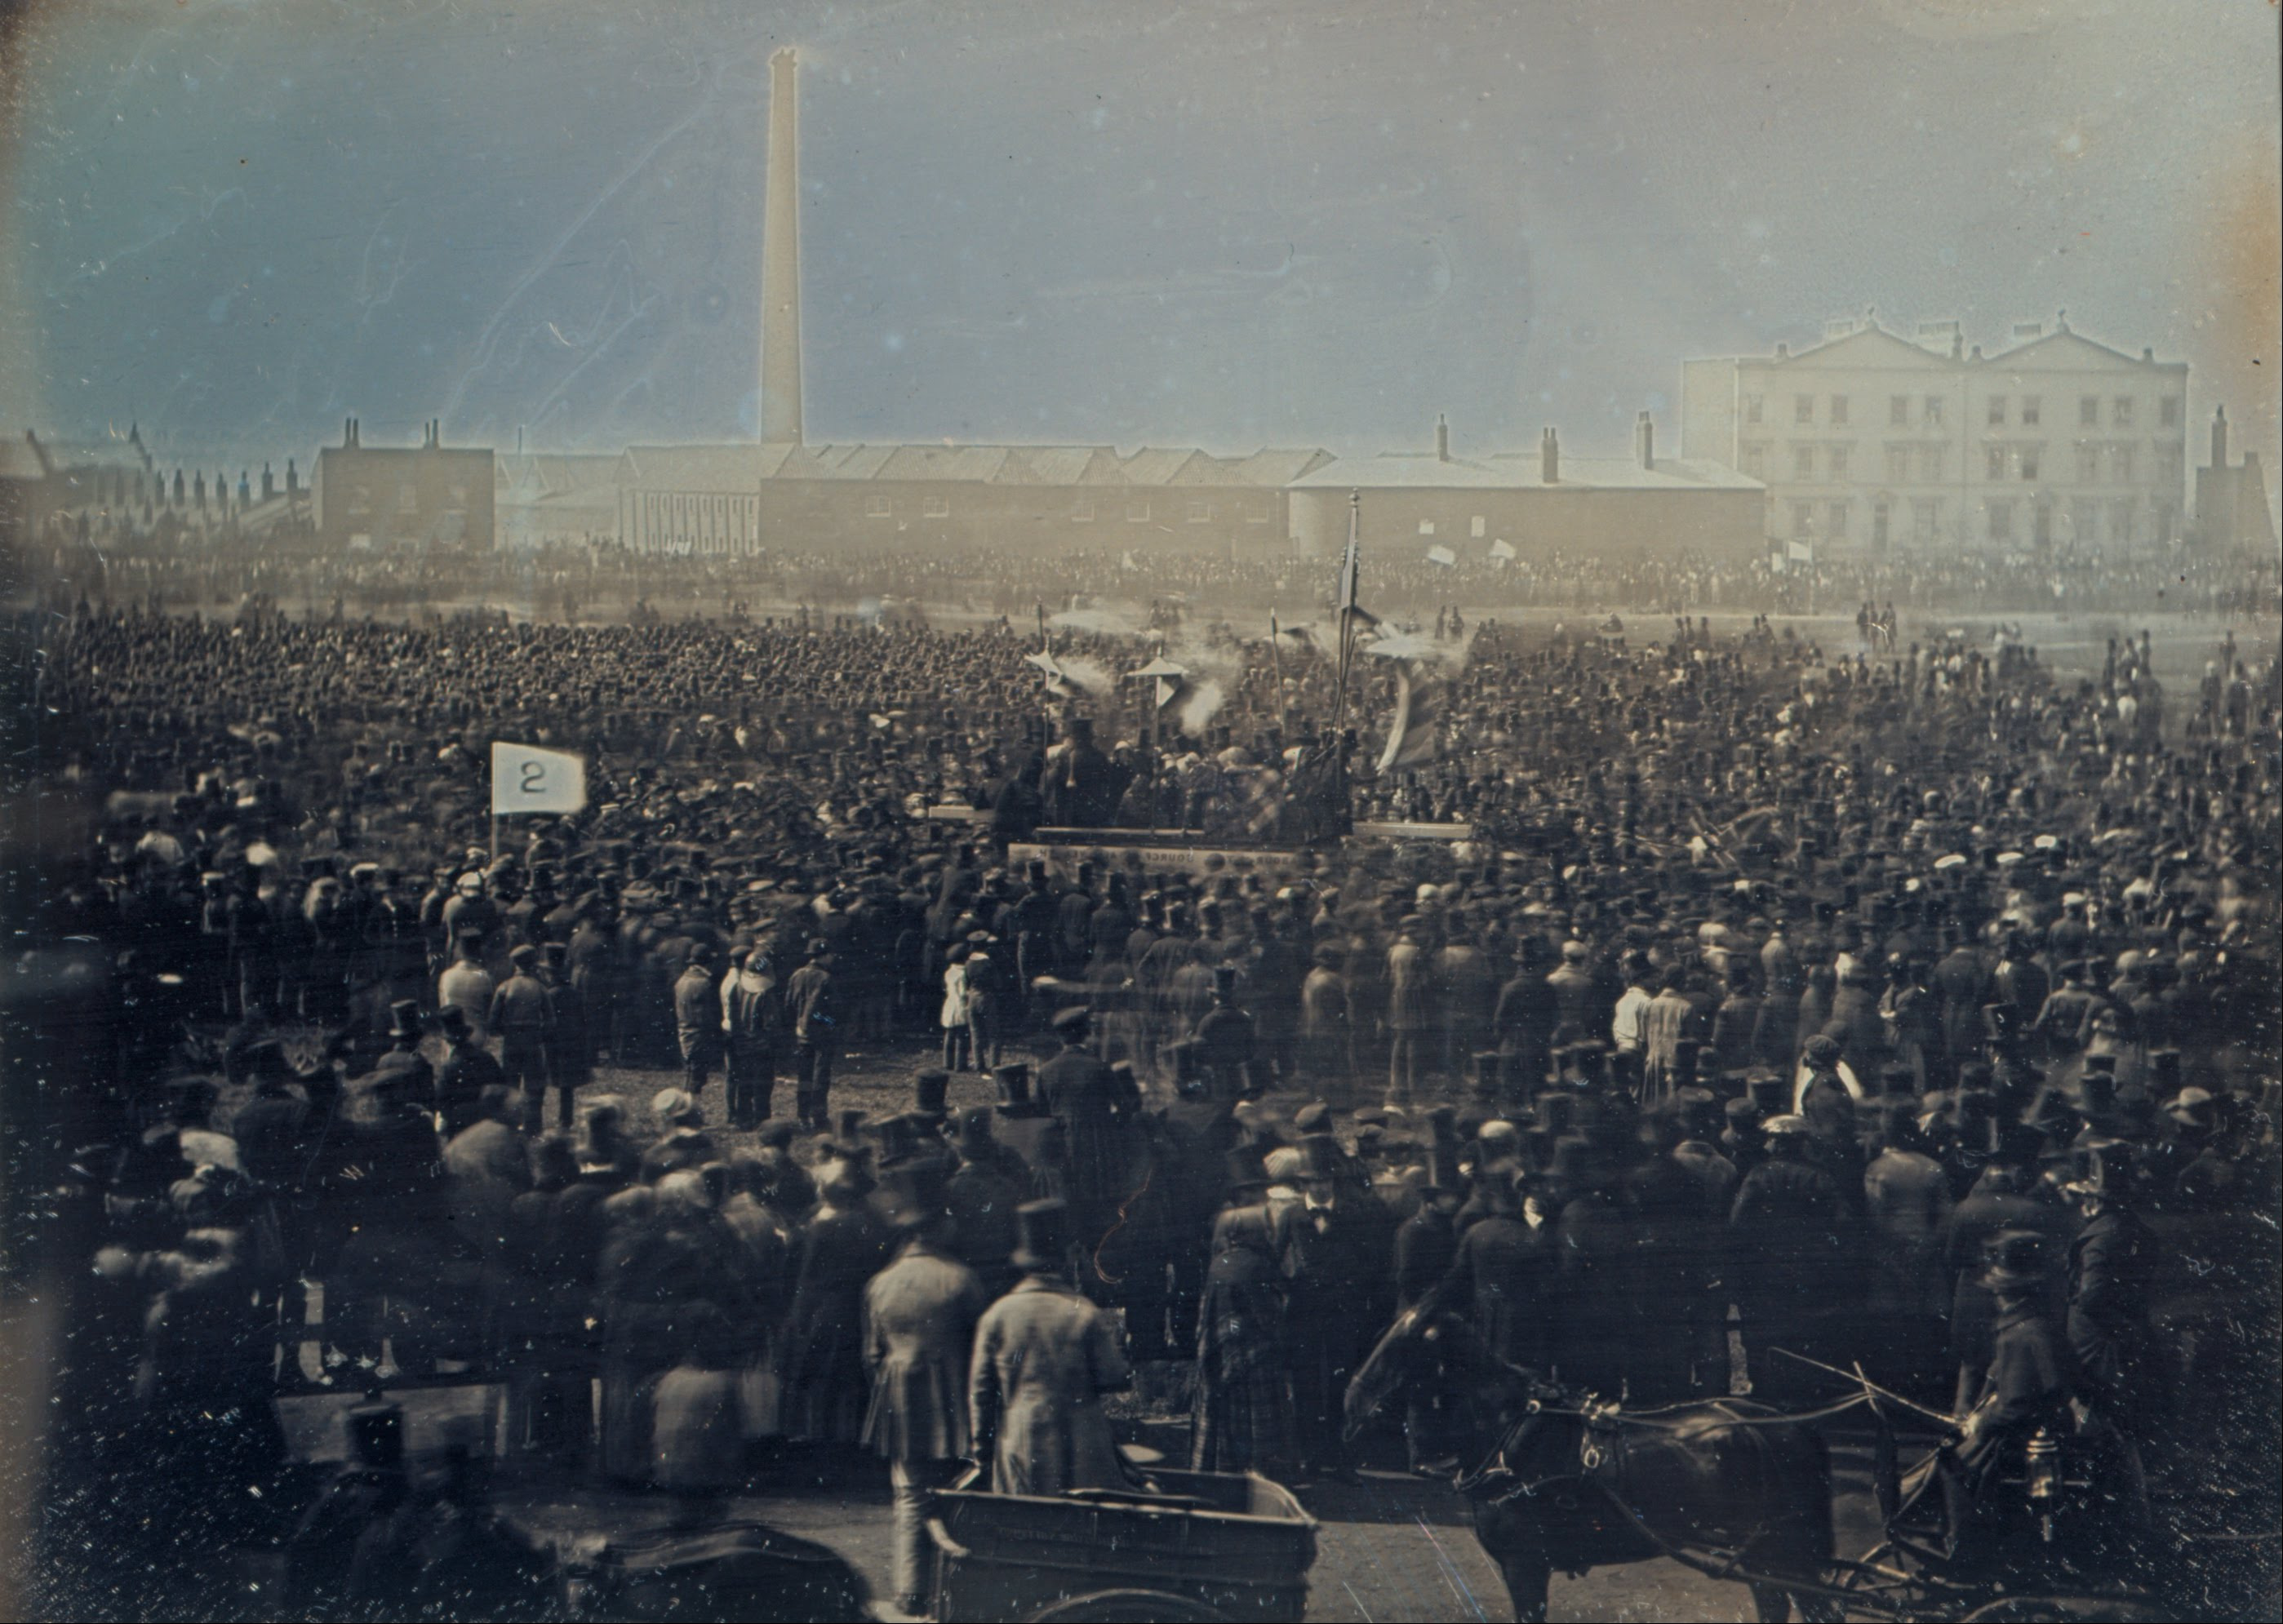 Vista del gran encuentro Cartista en Kennington Common, Londres 1848. Daguerrotipo: William Edward Kilburn (Dominio público)